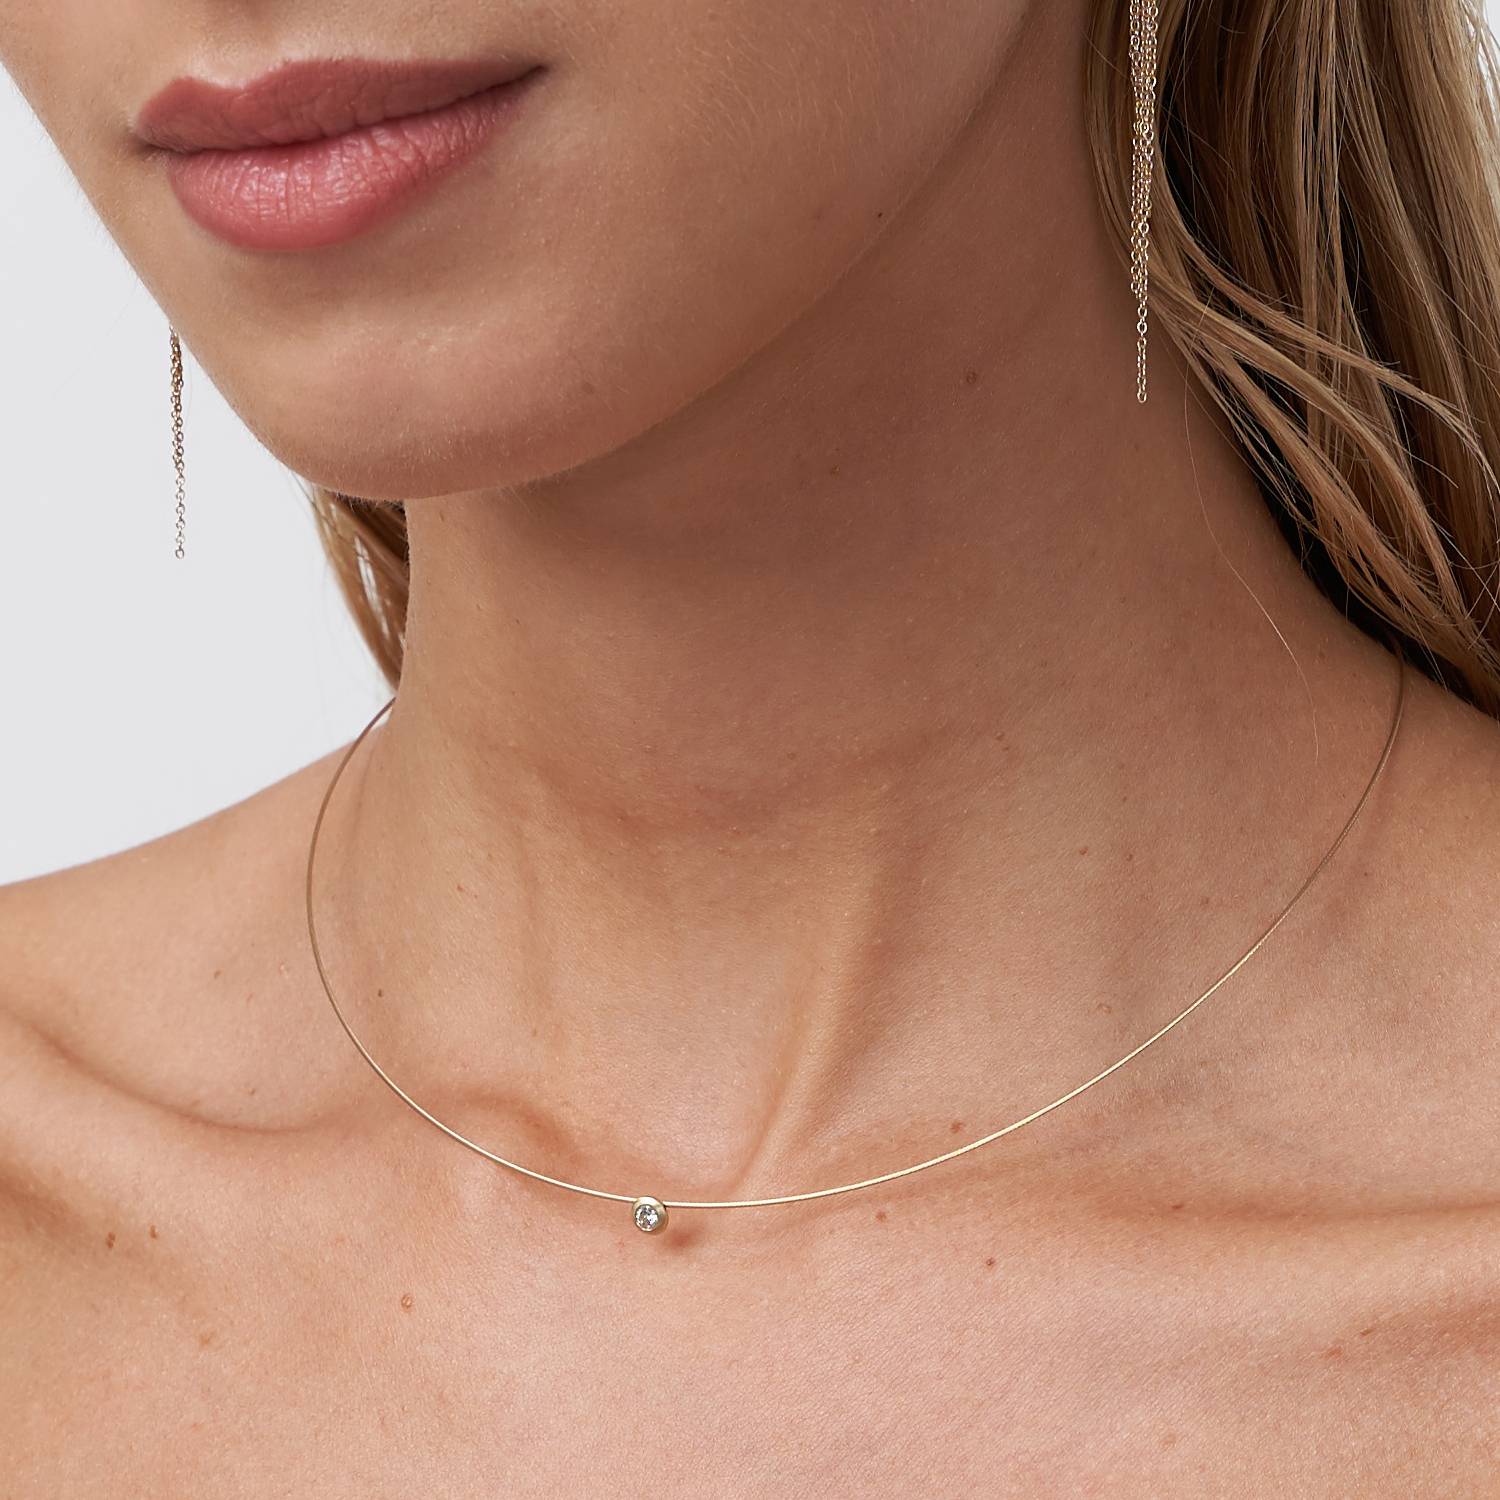 Necklaces & Pendants for Women